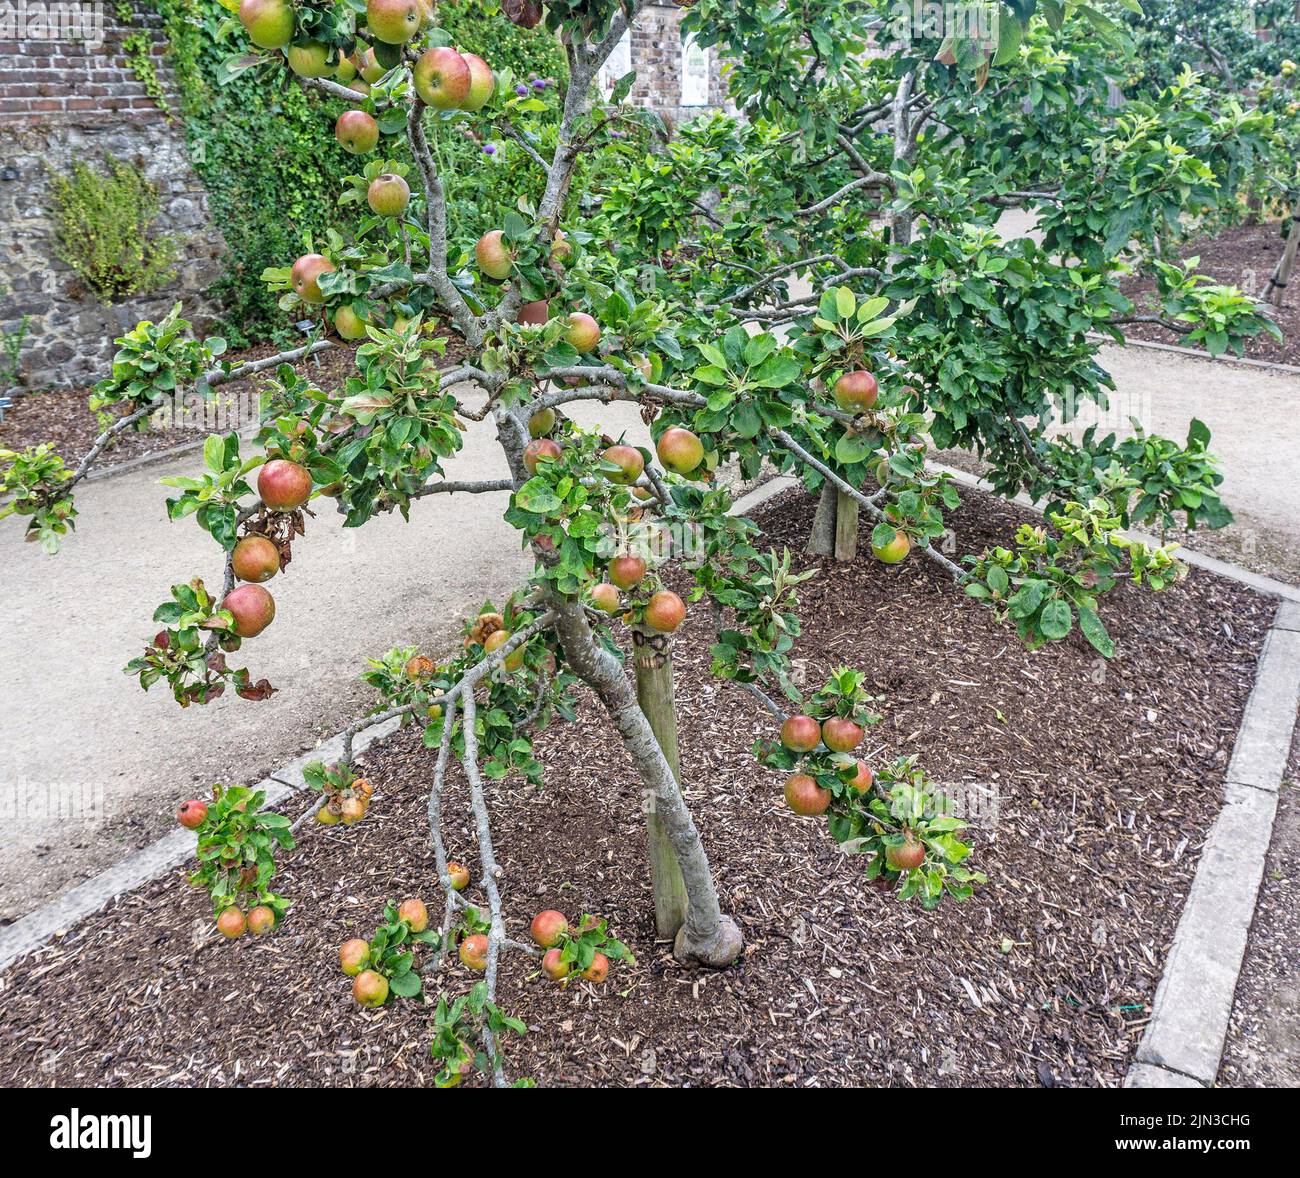 Der essbare Apfel Rosacea Malus Cevaal, der hier gezeigt wird, ist voller reifender und reifender Früchte. Stockfoto